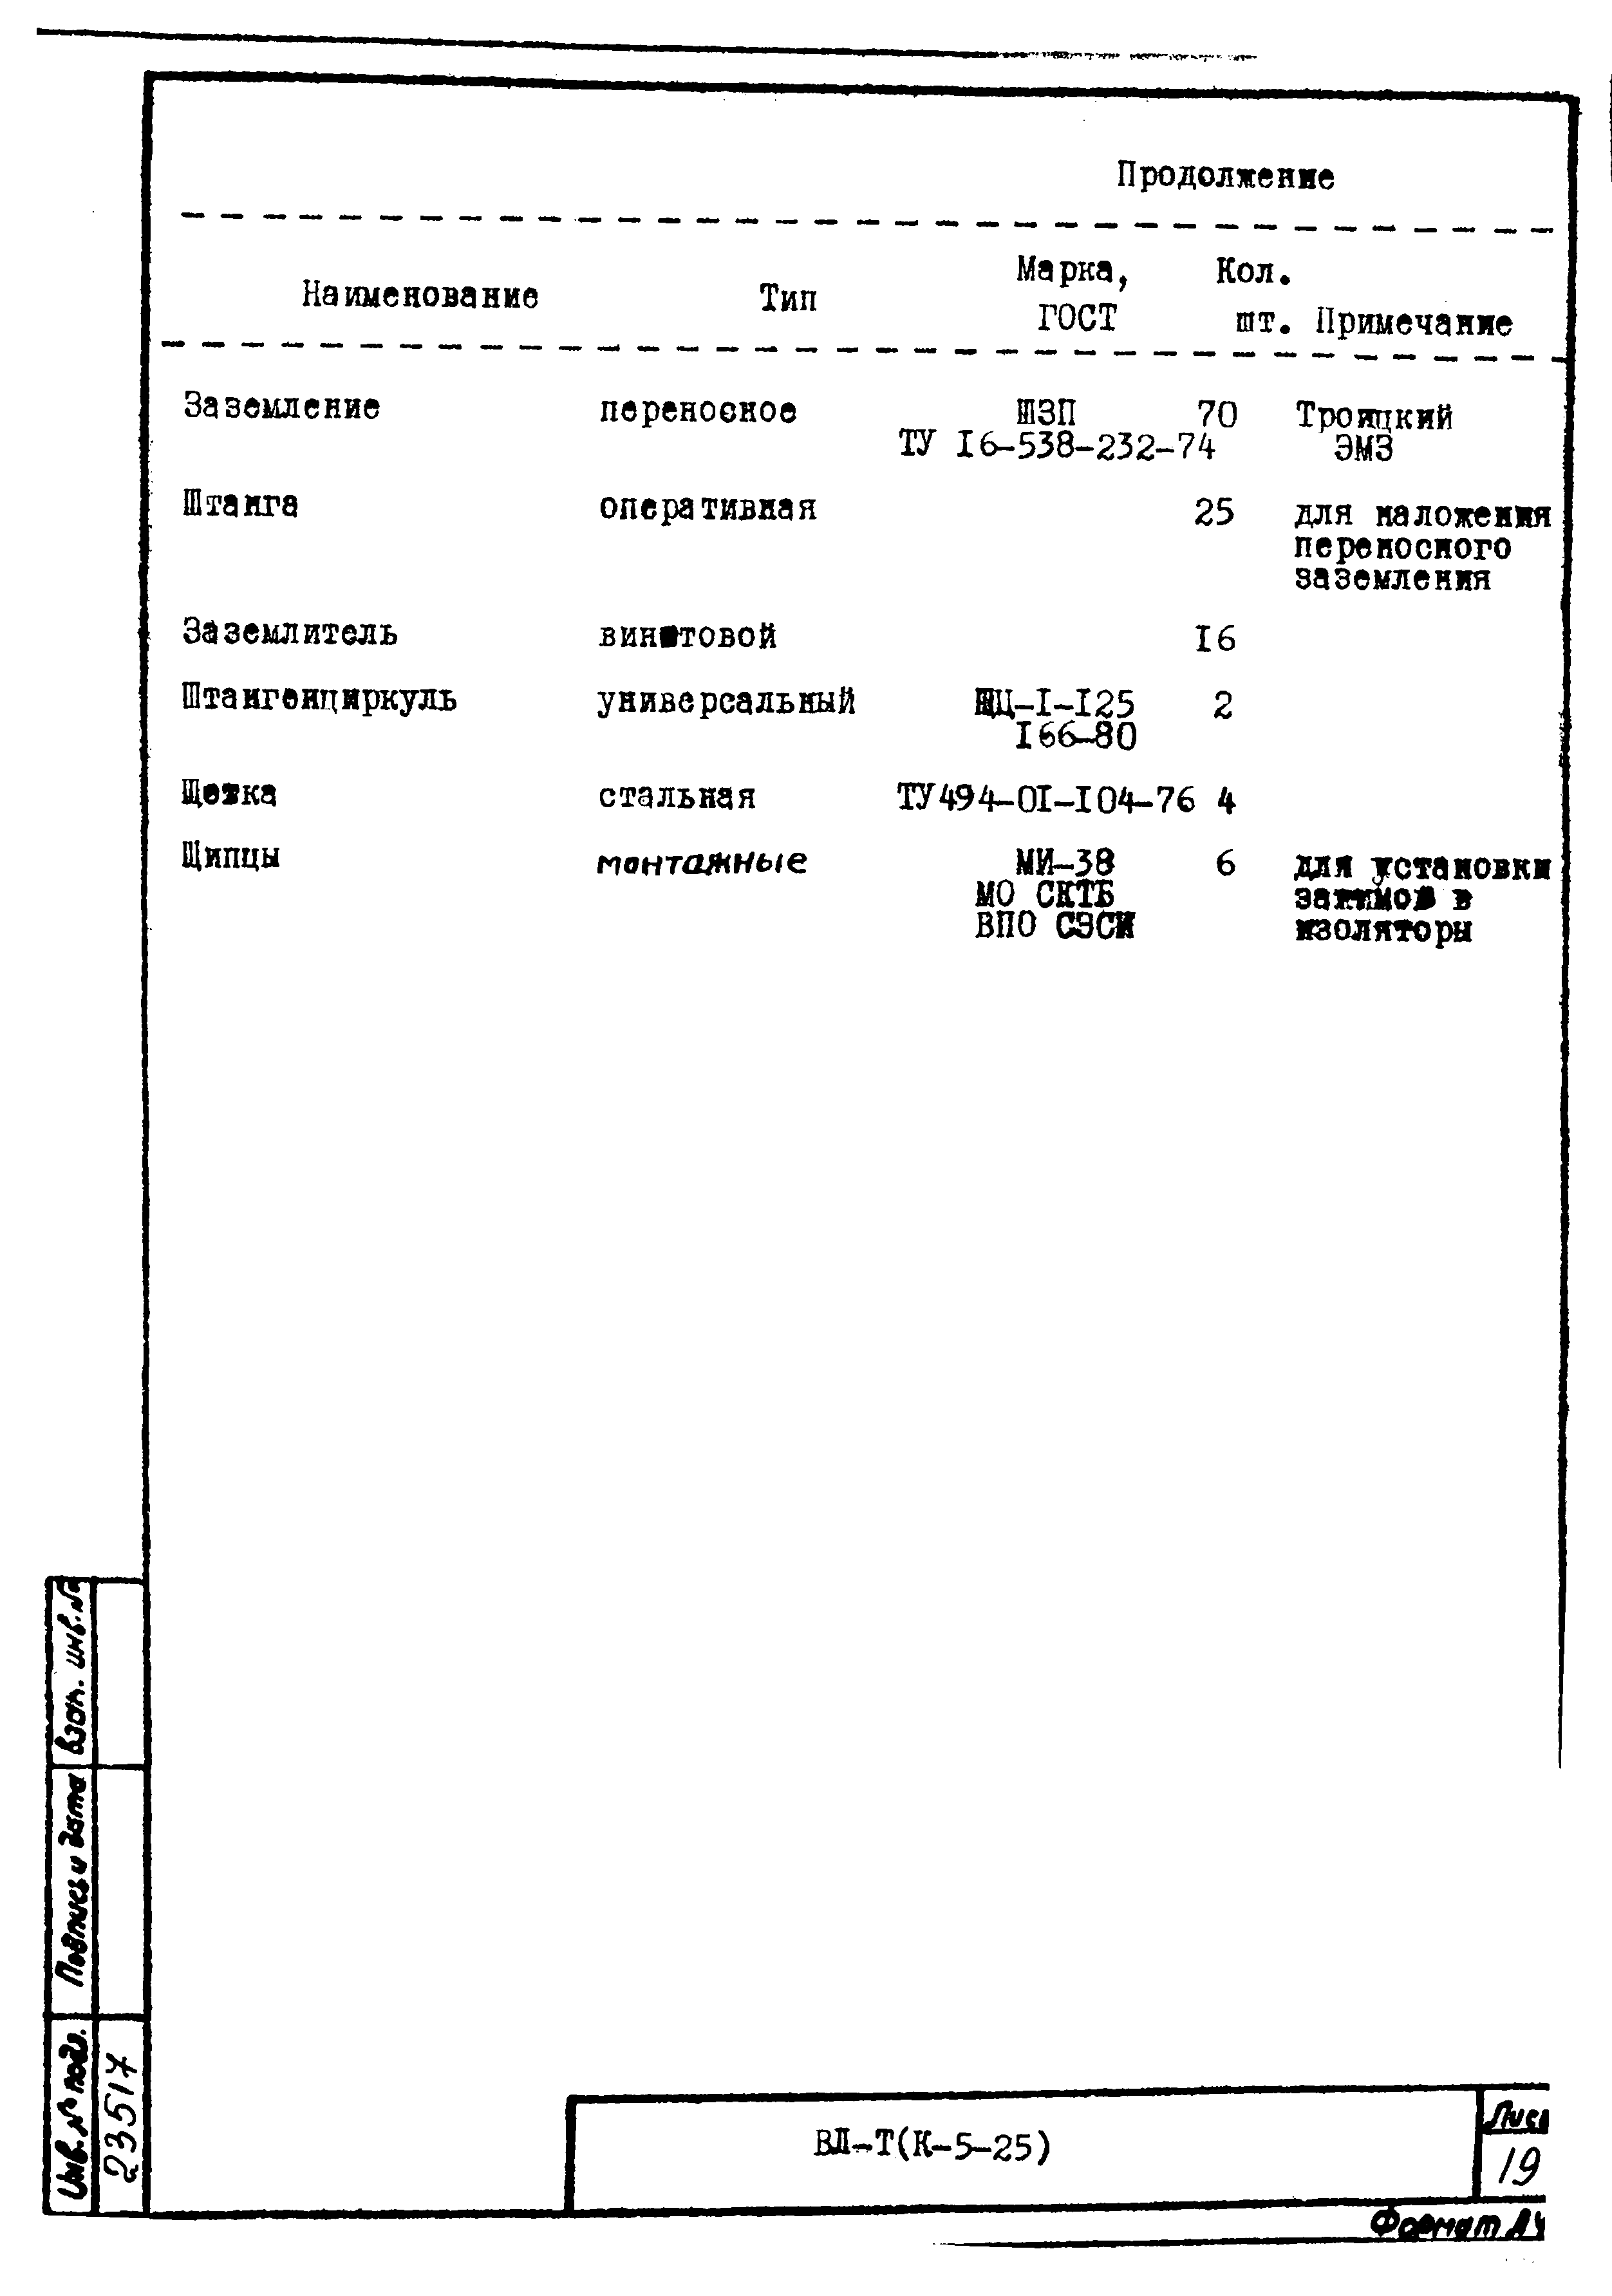 Технологическая карта К-5-25-16